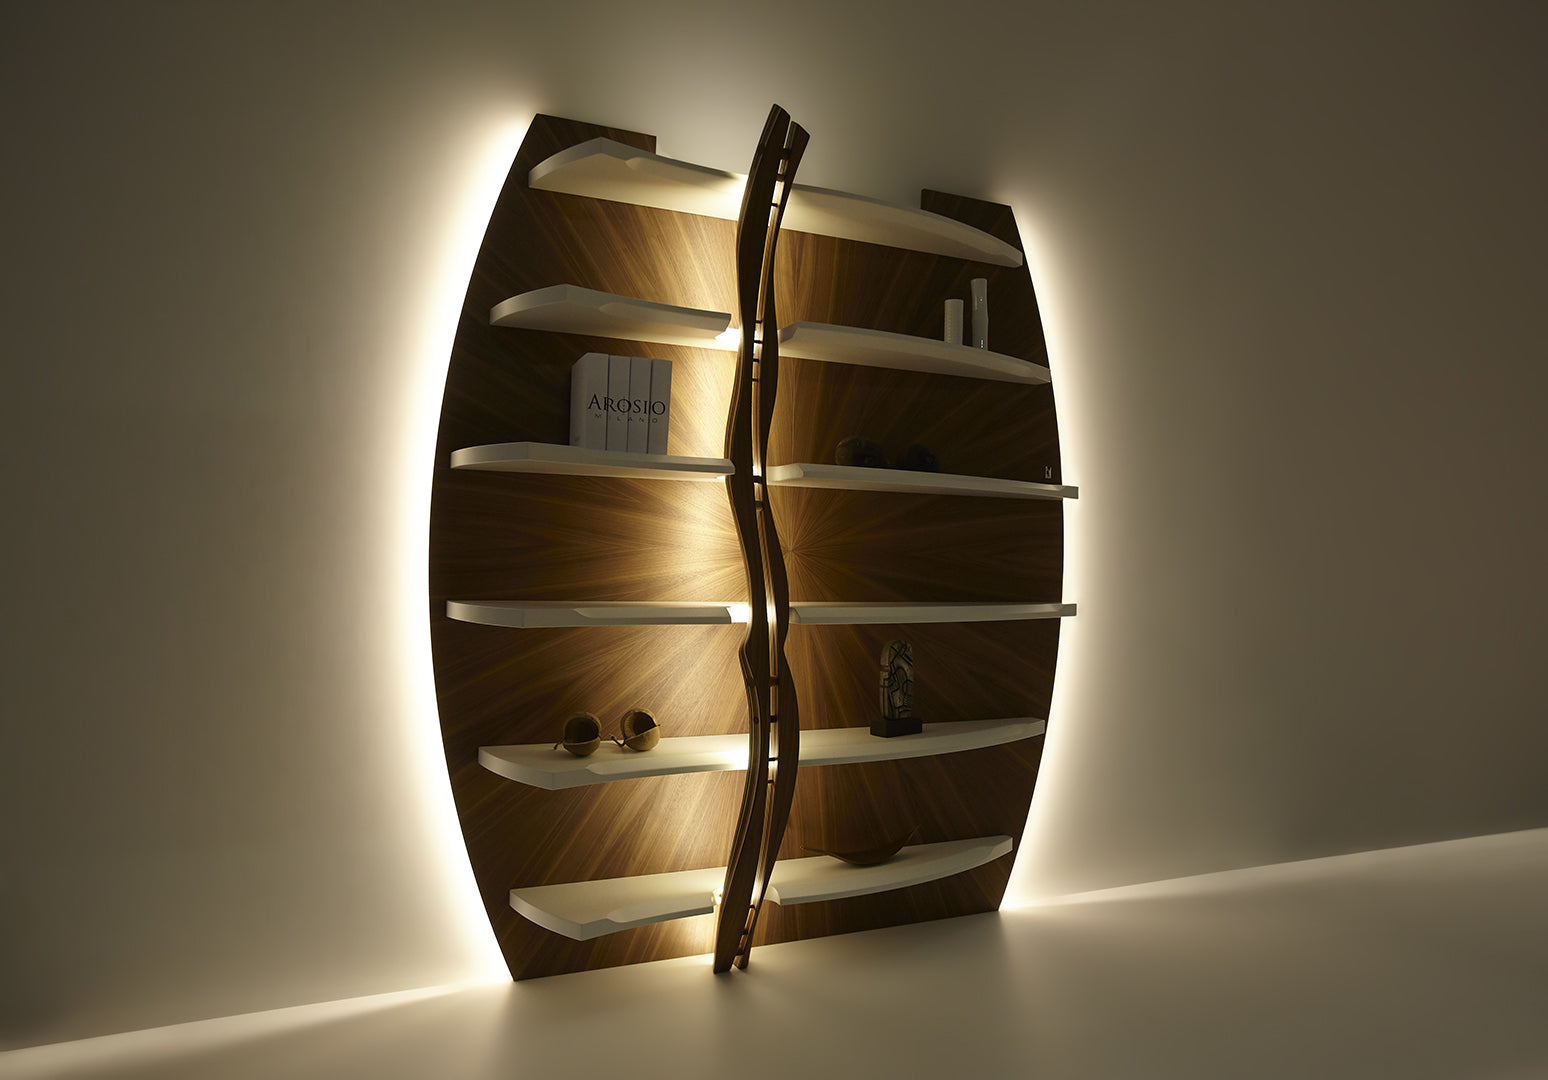 COBRA Canaletto Bookcase Sculpture - Arosio Milano